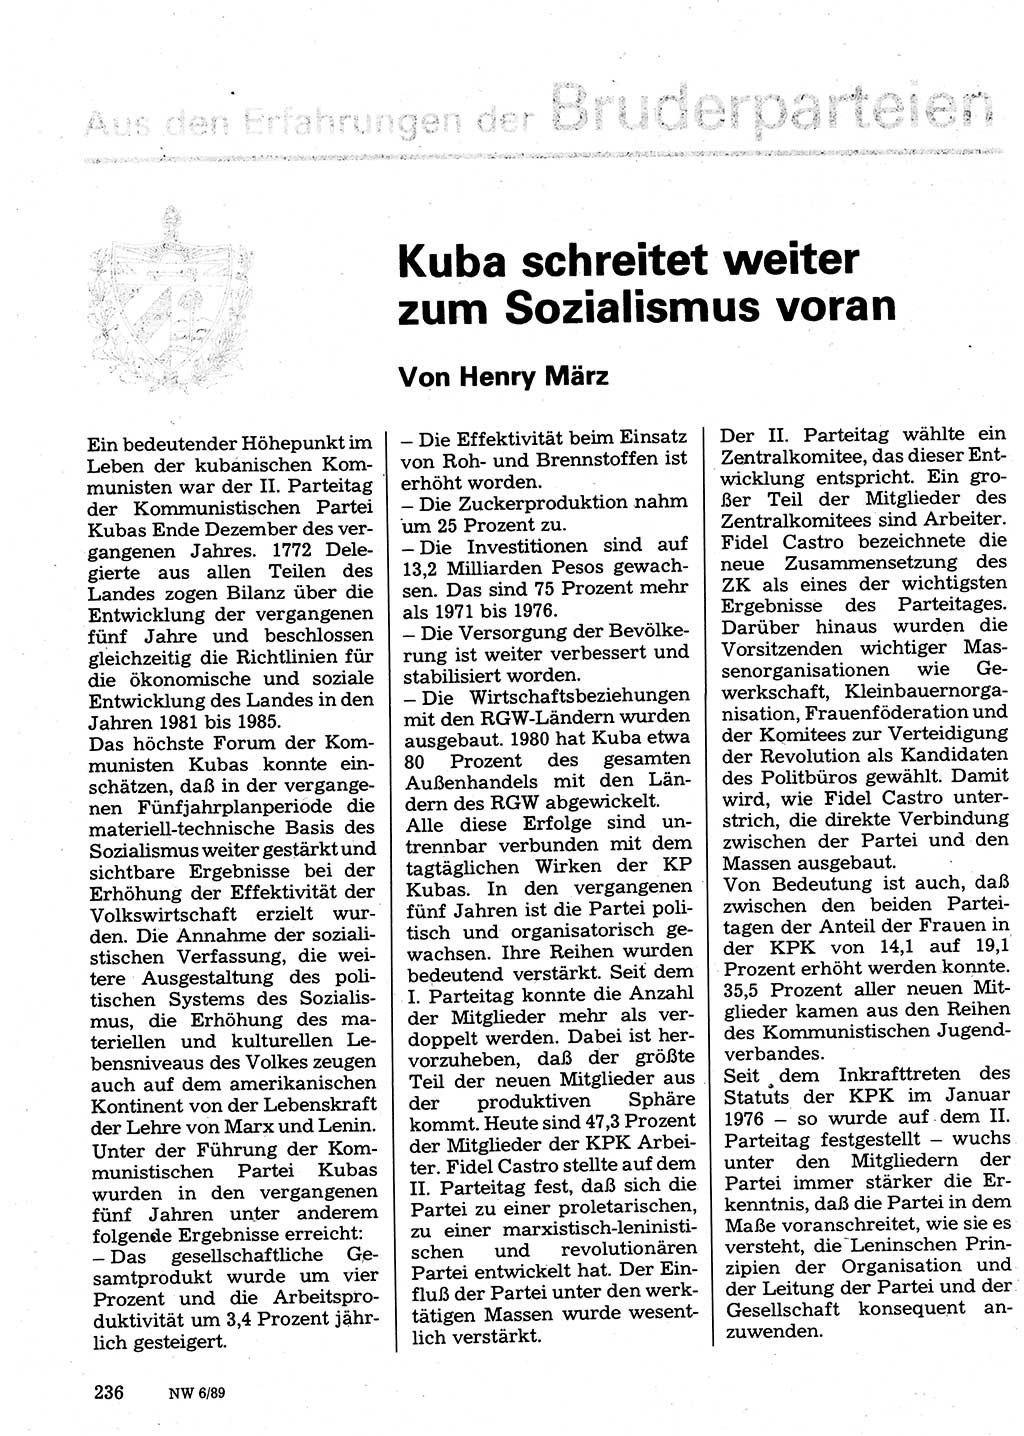 Neuer Weg (NW), Organ des Zentralkomitees (ZK) der SED (Sozialistische Einheitspartei Deutschlands) für Fragen des Parteilebens, 36. Jahrgang [Deutsche Demokratische Republik (DDR)] 1981, Seite 236 (NW ZK SED DDR 1981, S. 236)